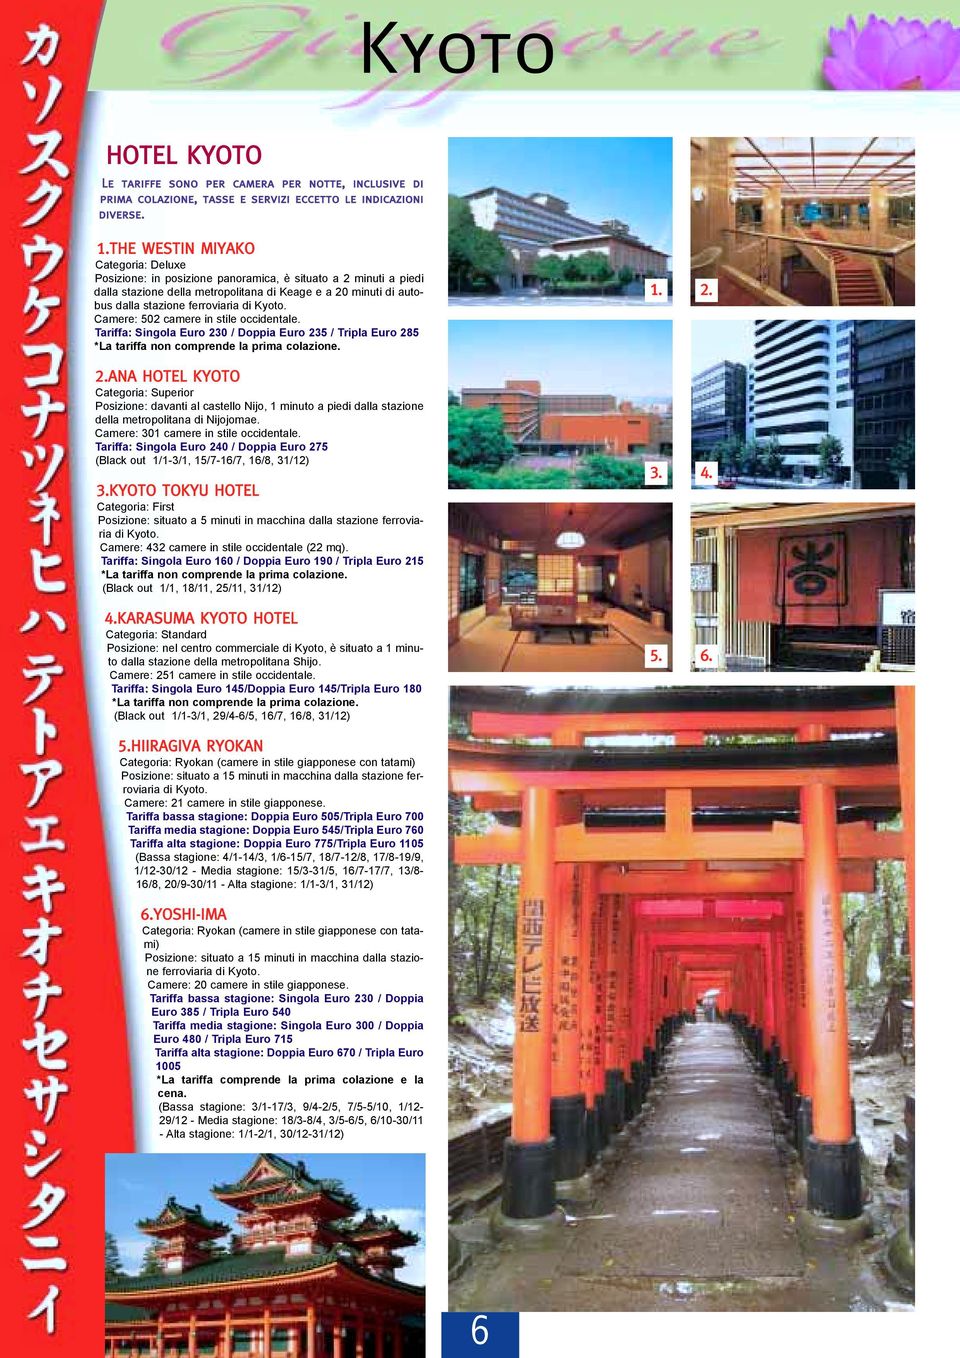 Kyoto. Camere: 502 camere in stile occidentale. Tariffa: Singola Euro 23